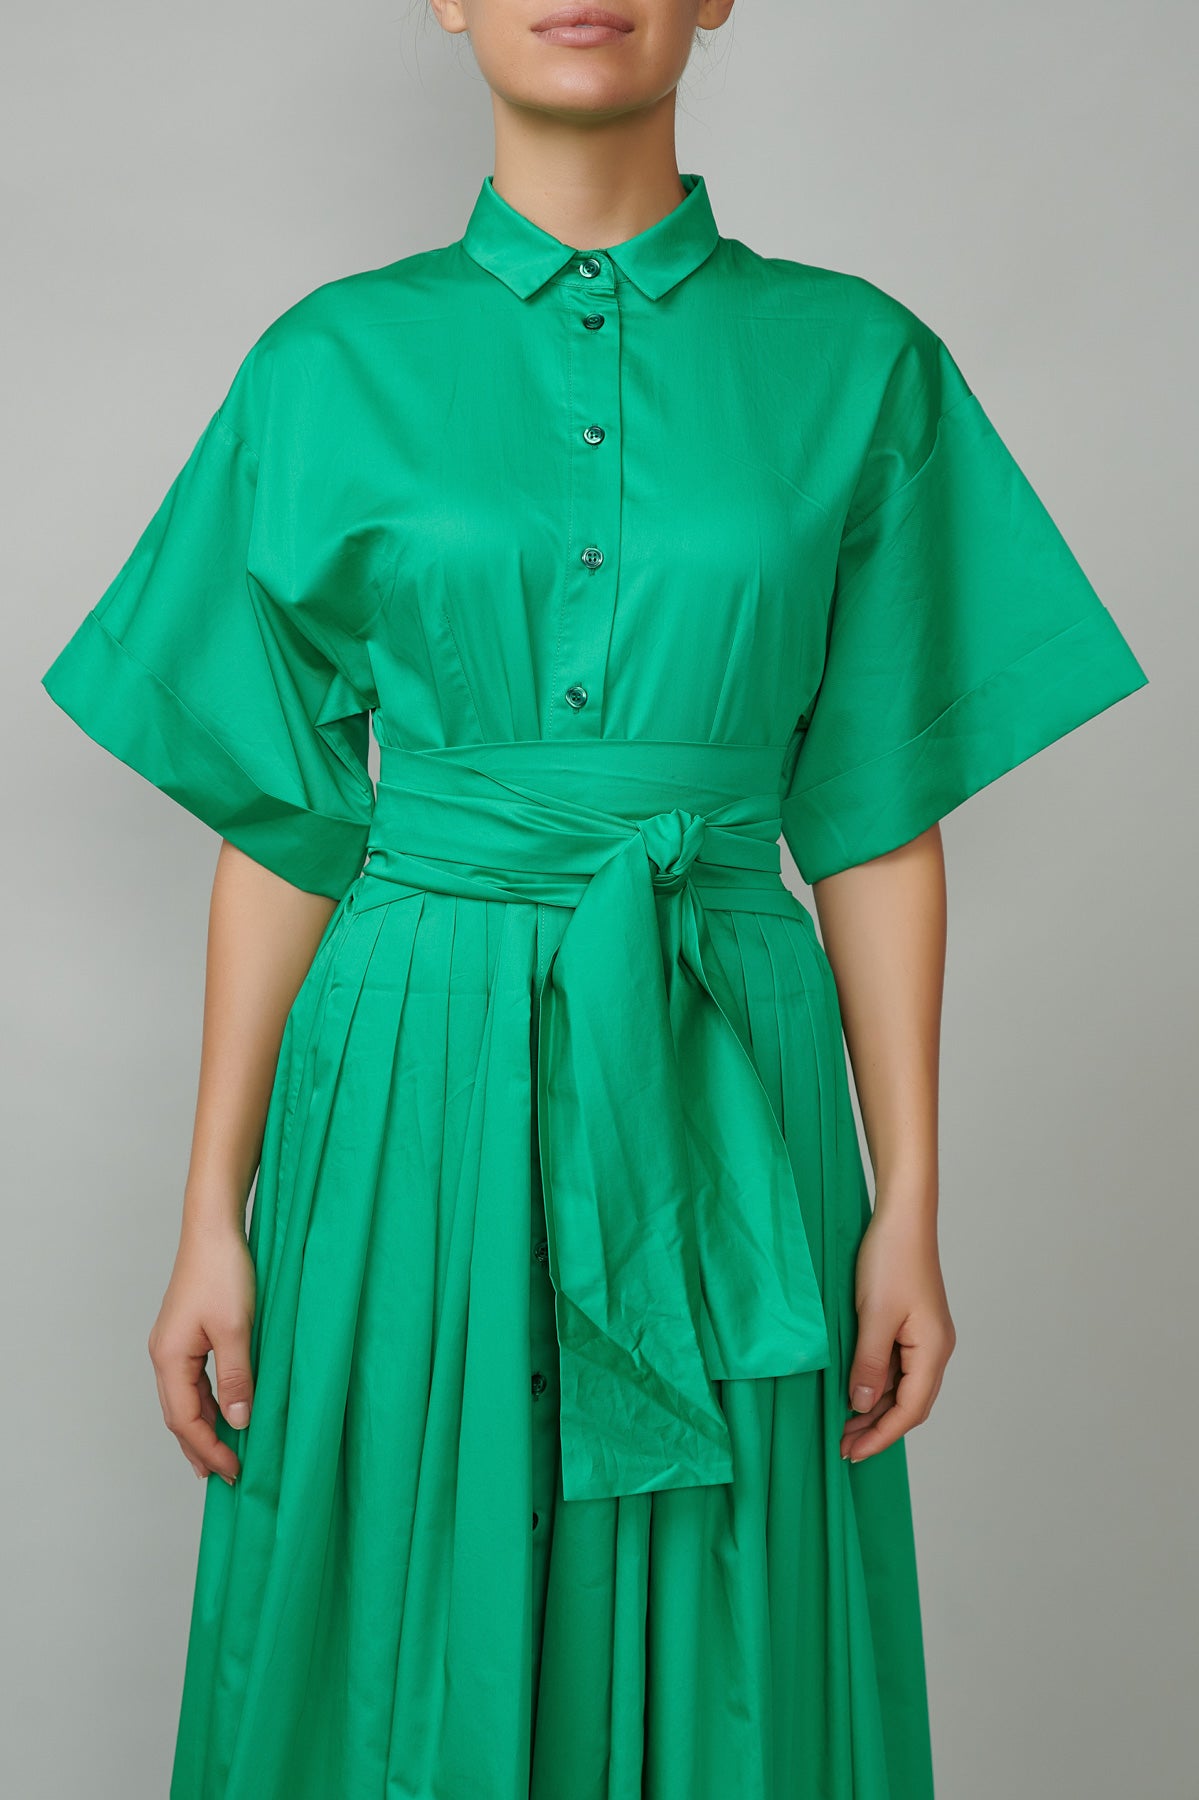 Evening dress, long, made of green cotton